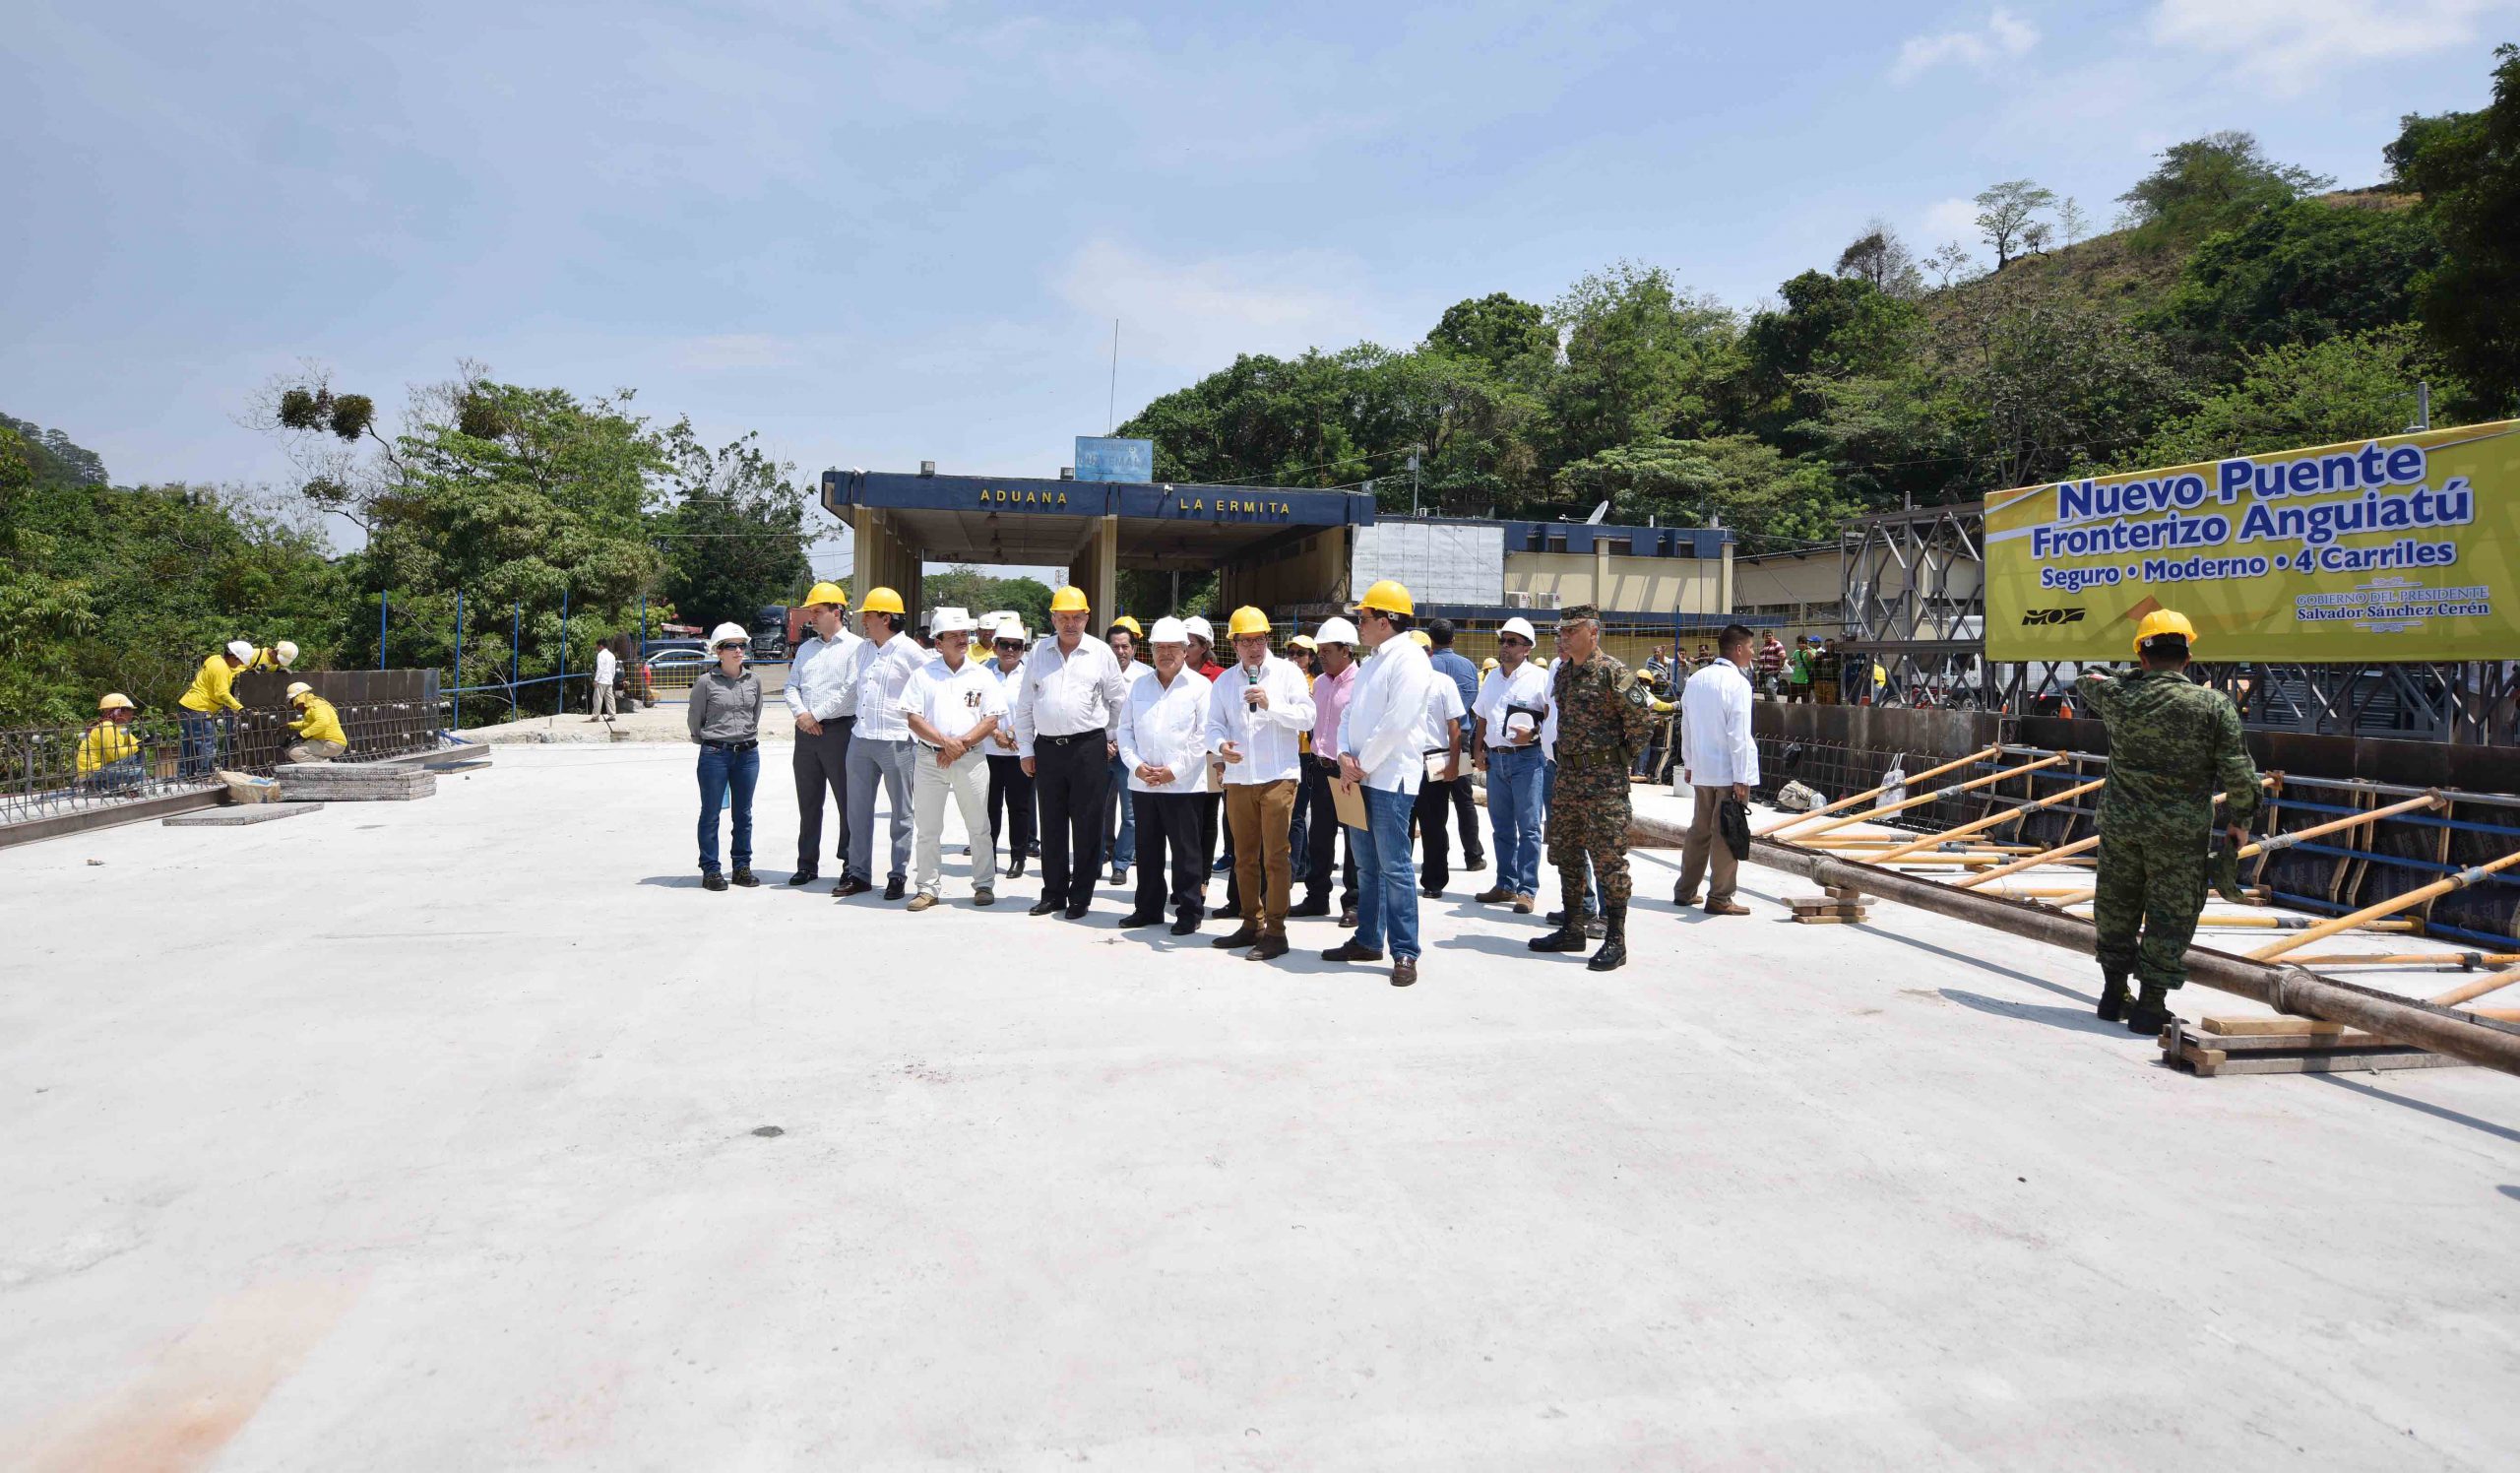 Presidente de la República, MOP y autoridades de México supervisan avance construcción nuevo puente fronterizo sobre Río Anguiatú, Metapán